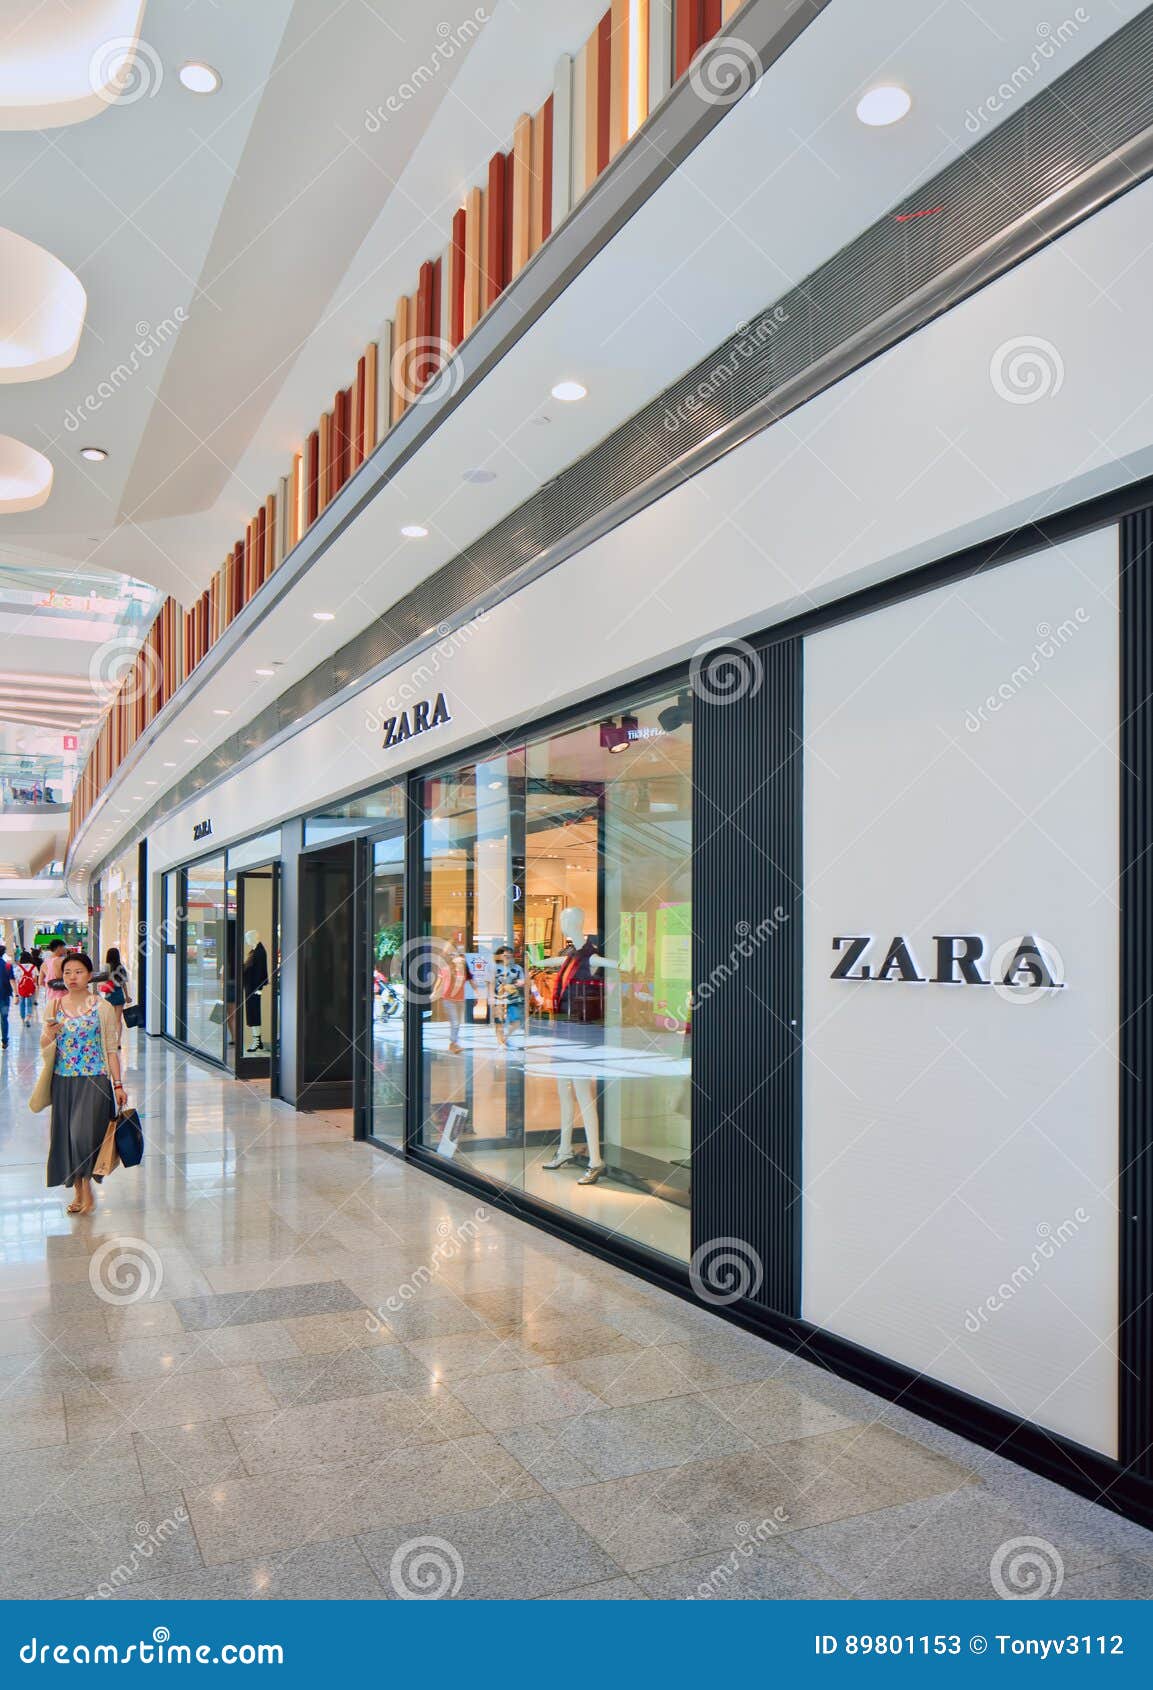 zara shopping mall